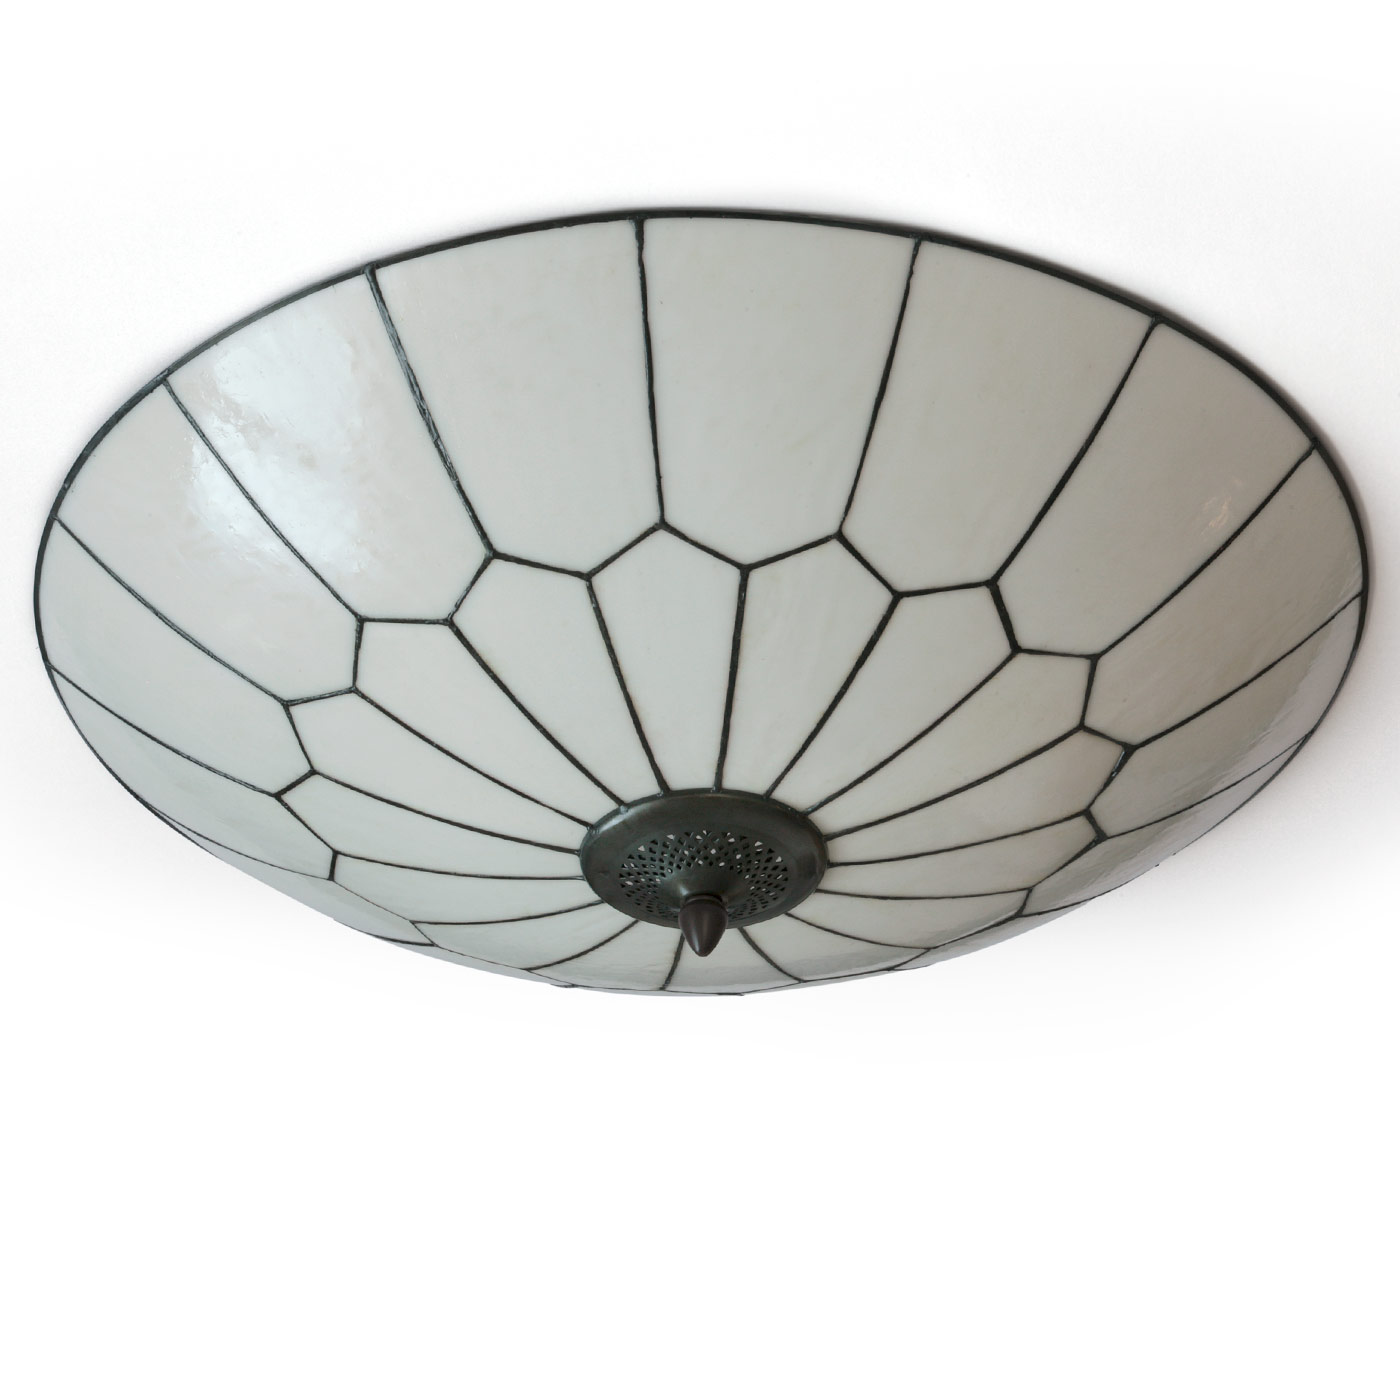 Flache runde Art Déco-Deckenleuchte aus Tiffanyglas Ø 60 cm: Flache, runde Art Déco-Deckenleuchte aus Tiffanyglas, Durchmesser 60 cm (ausgeschaltet)